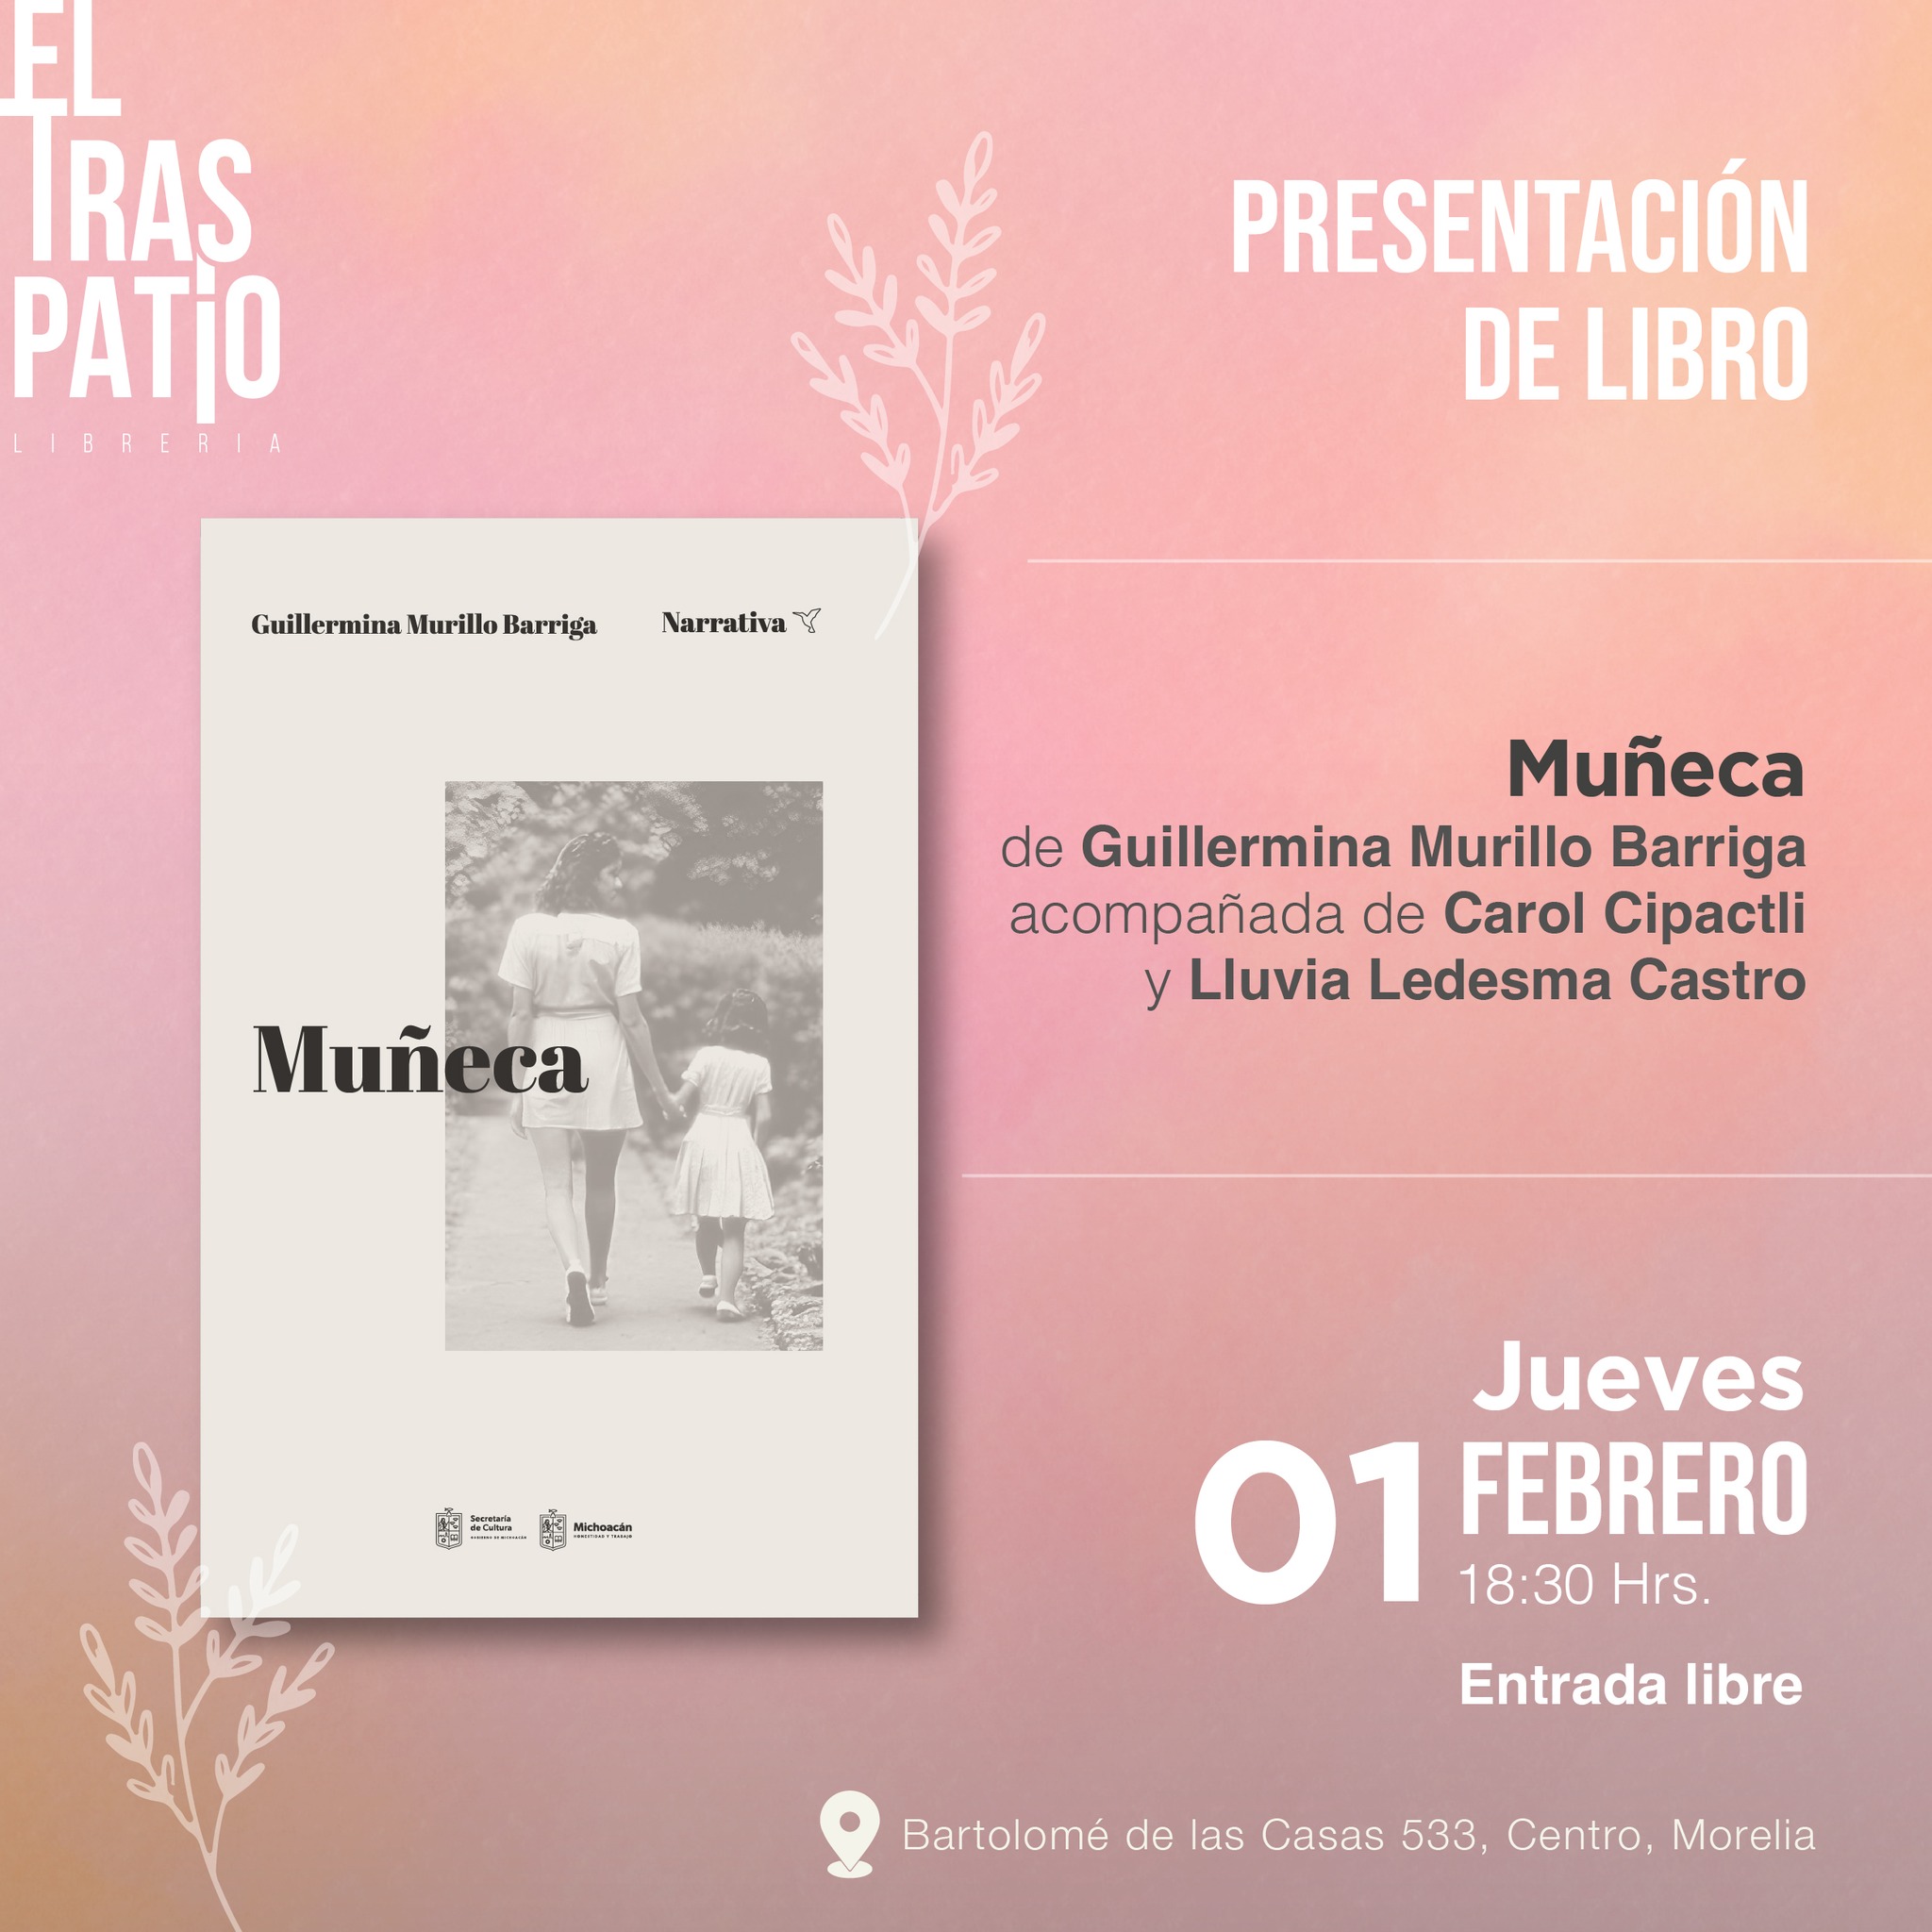 Prepara librería “El Traspatio” actividades sobre el libro “Muñeca” de Guillermina Murillo Barriga